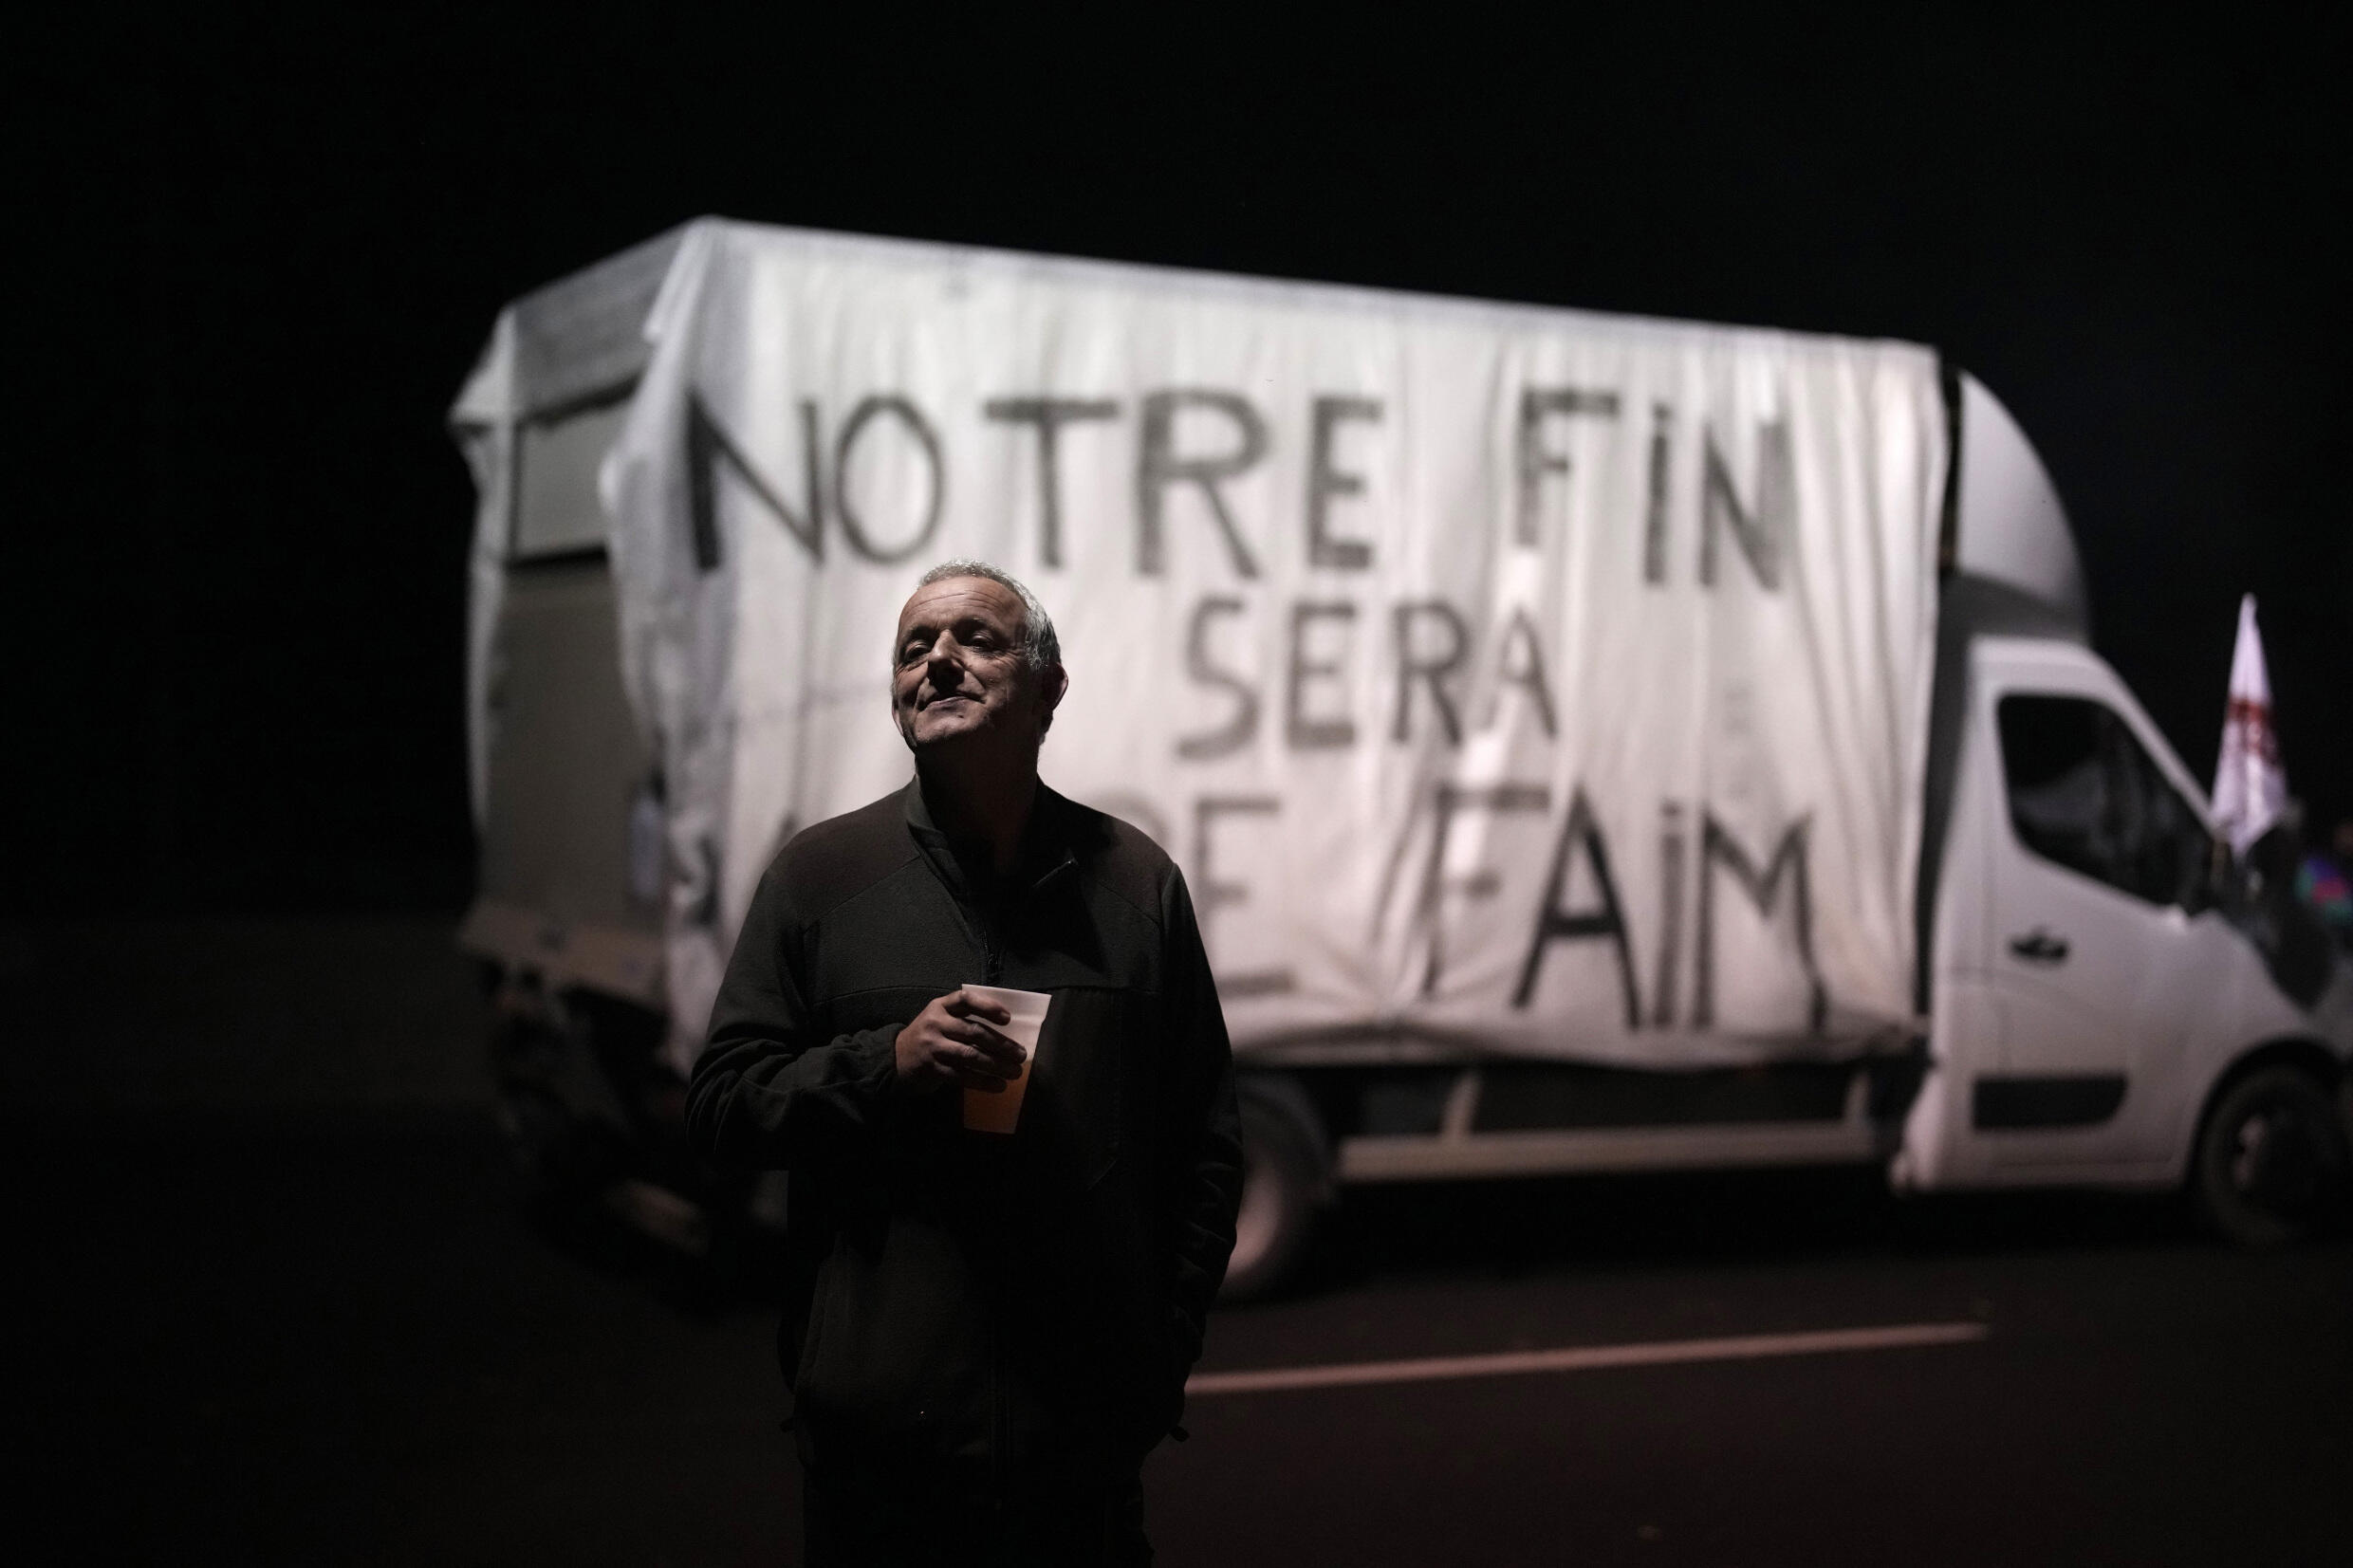 "Unser Ende wird dein Hunger sein" liest die Schrift auf einem Bauerntransporter, der am 29. Januar 2024 auf einer Autobahn in der Nähe von Argenteuil, nördlich von Paris, geparkt ist.